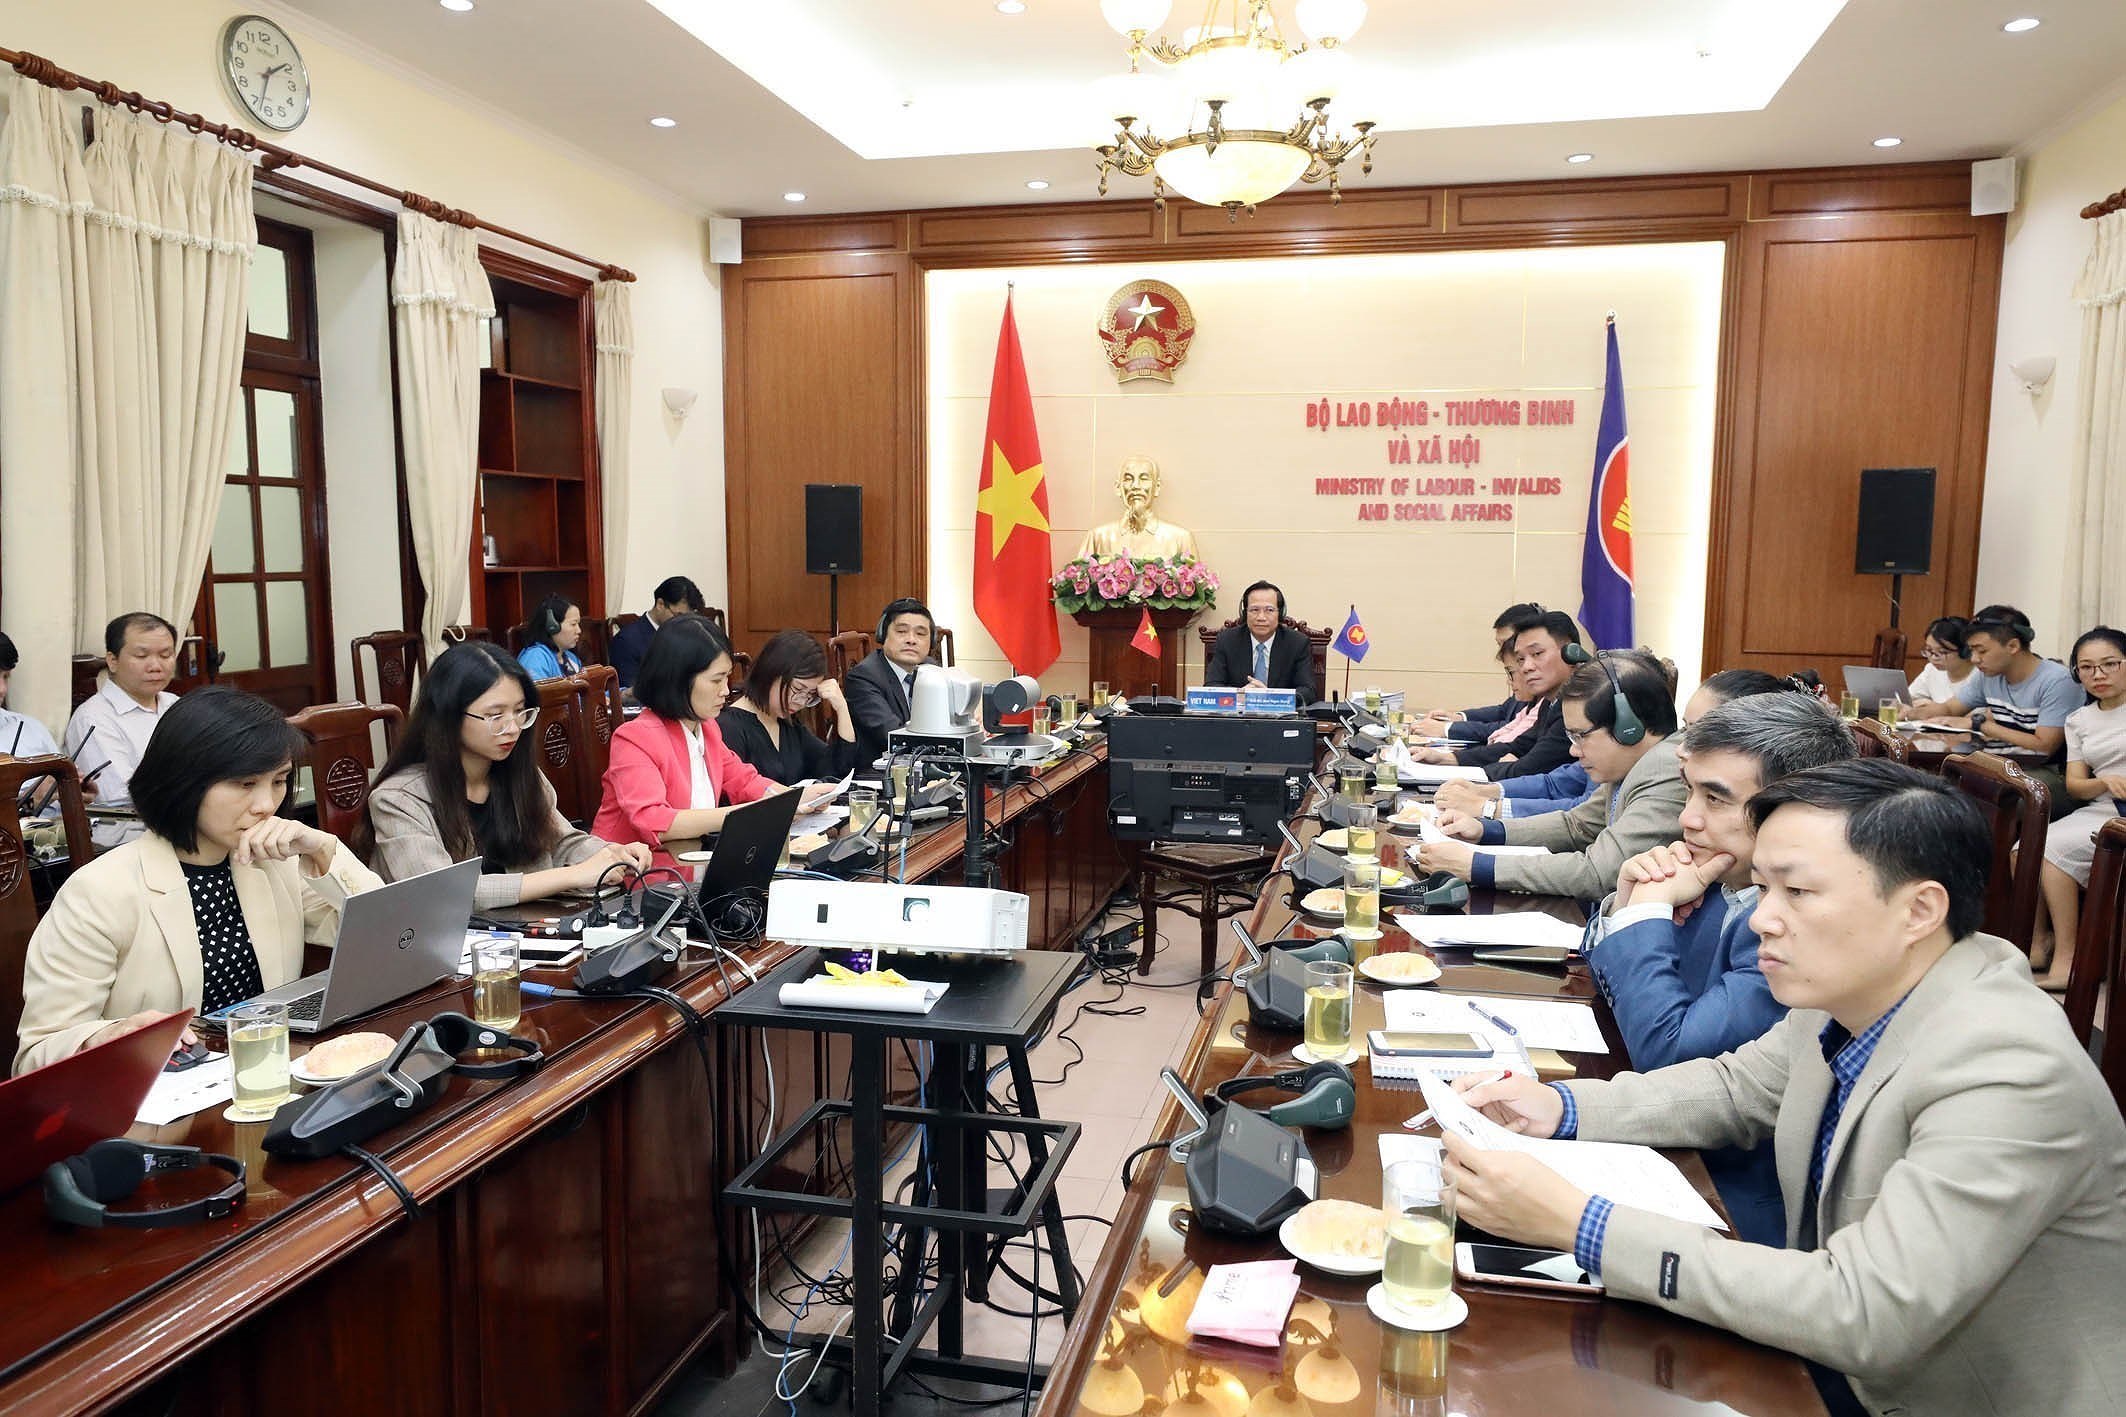 La position du Vietnam a la presidence tournante de l'ASEAN 2020 s'affirme de plus en plus hinh anh 2